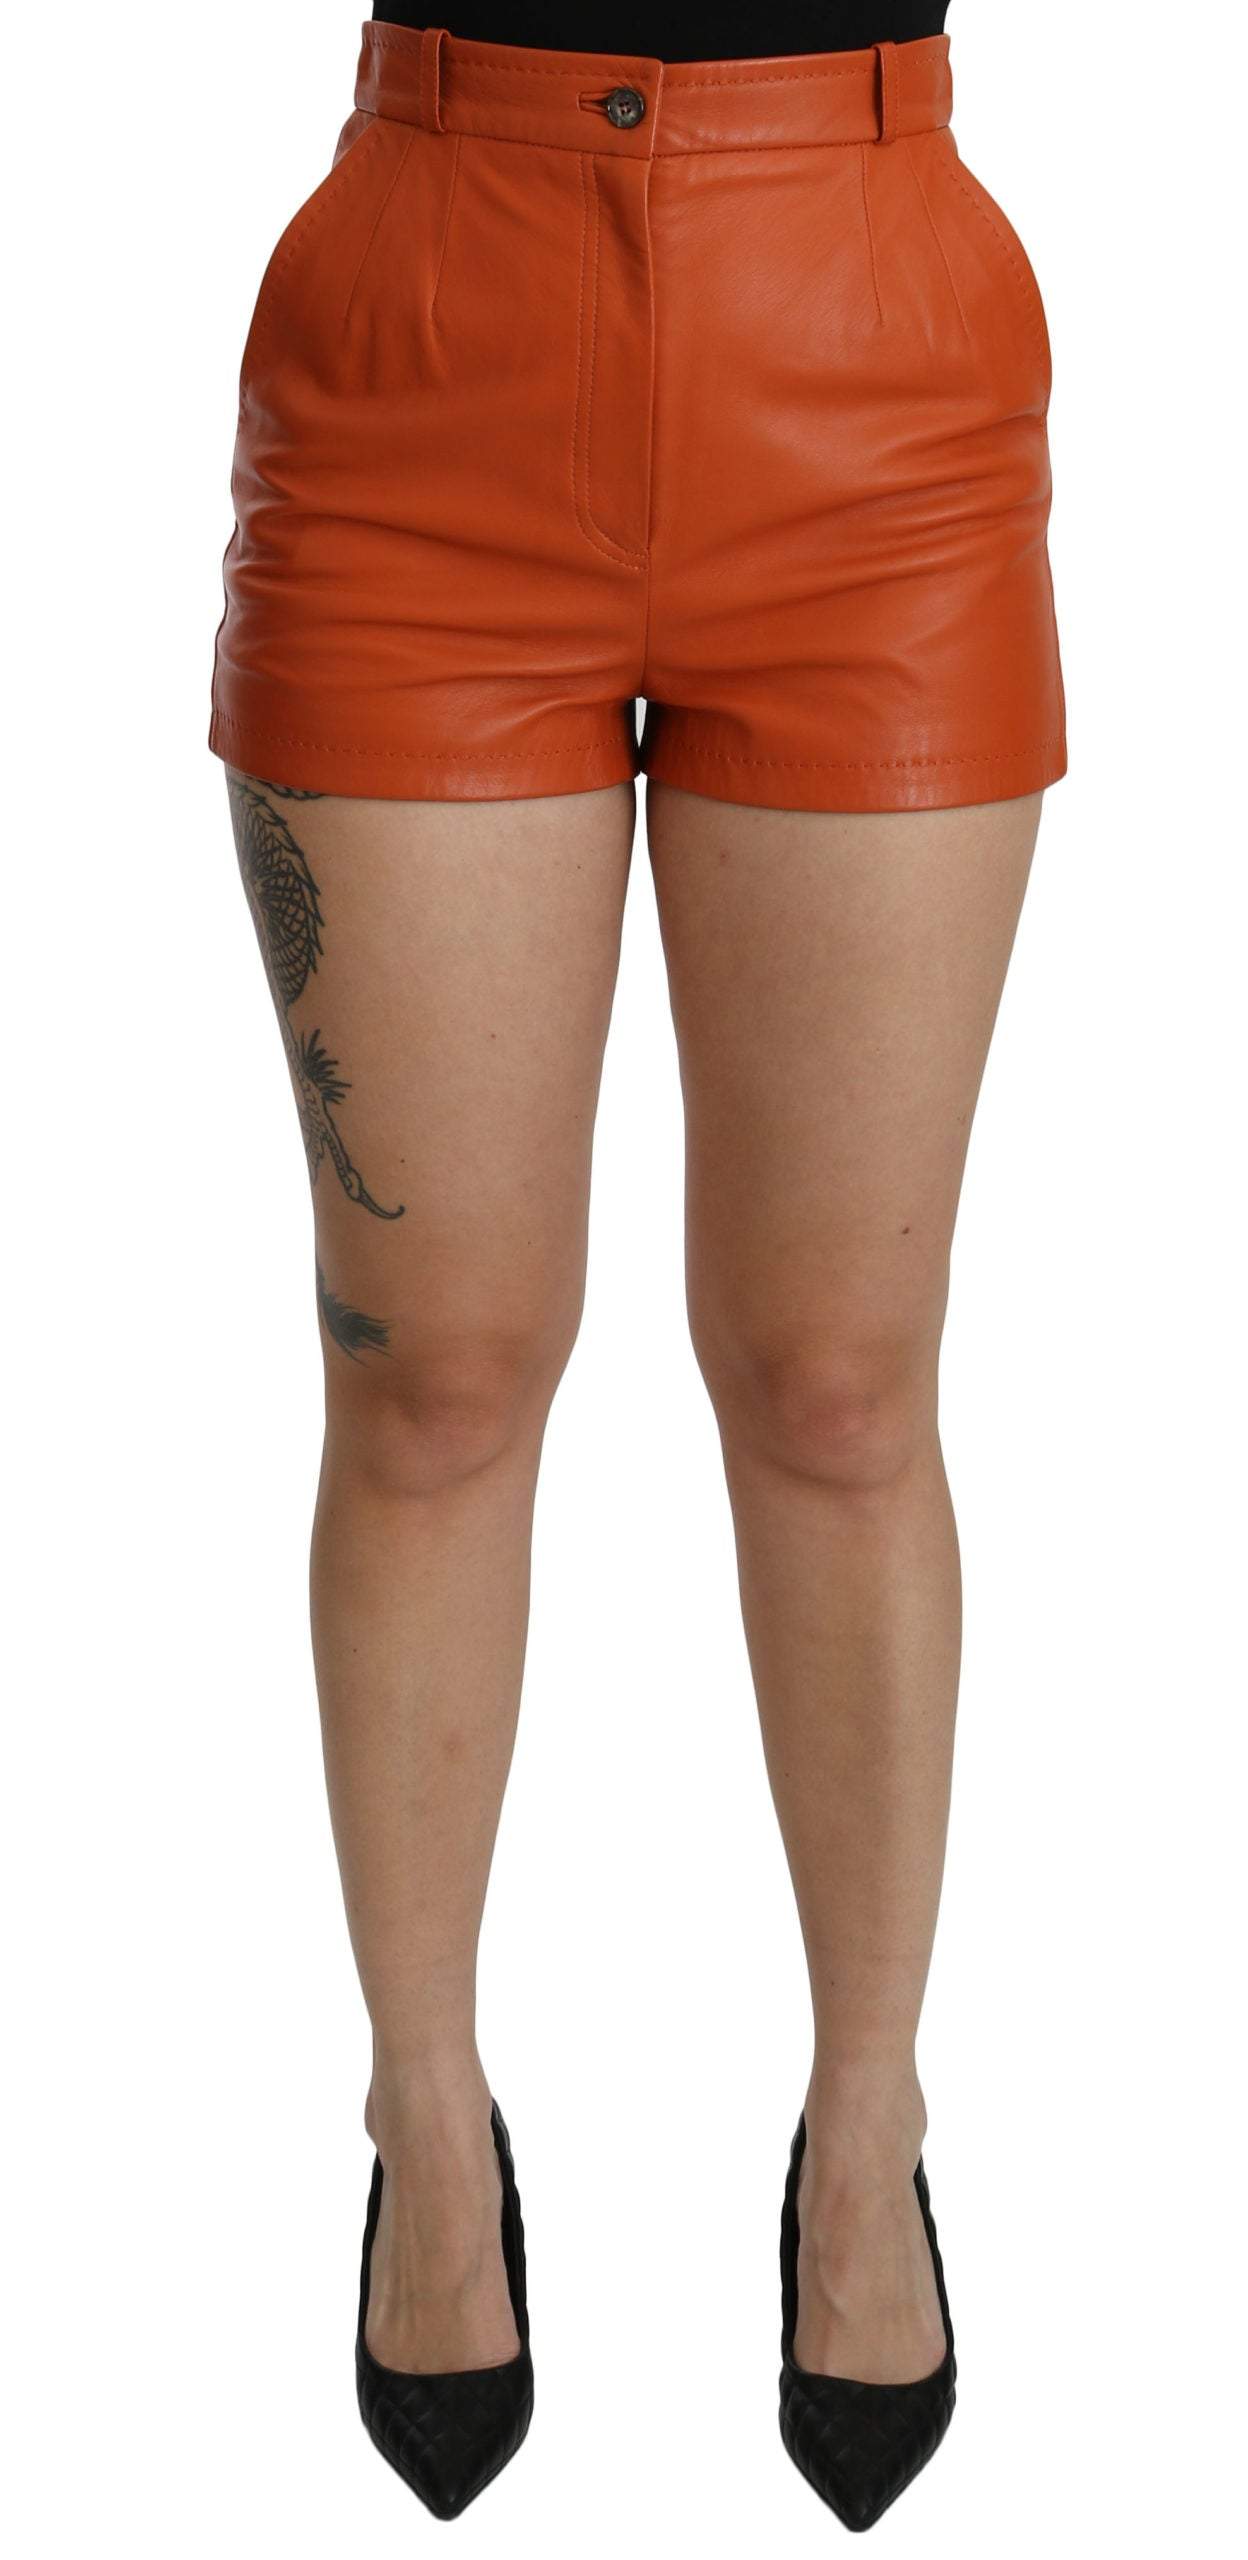 Dolce & Gabbana Orange Leather High Waist Hot Pants Shorts Dolce & Gabbana, feed-agegroup-adult, feed-color-Orange, feed-gender-female, IT40|S, Orange, Shorts - Women - Clothing at SEYMAYKA